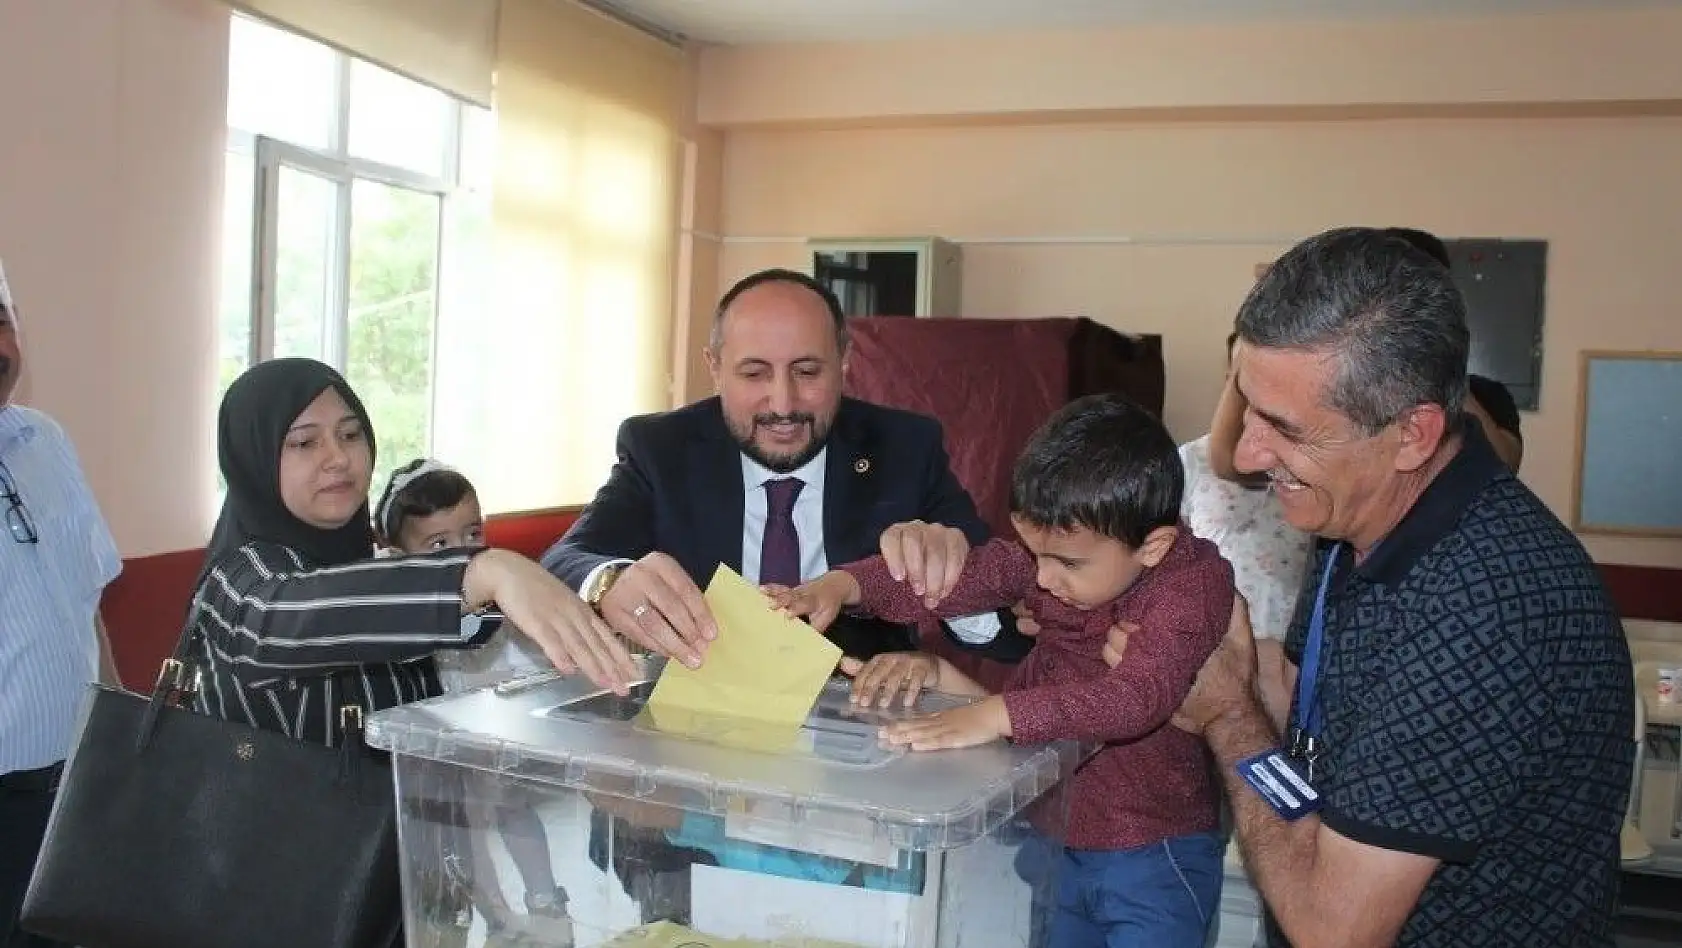 AK Parti Milletvekili adayı Karayel, oyunu ailesiyle birlikte kullandı
